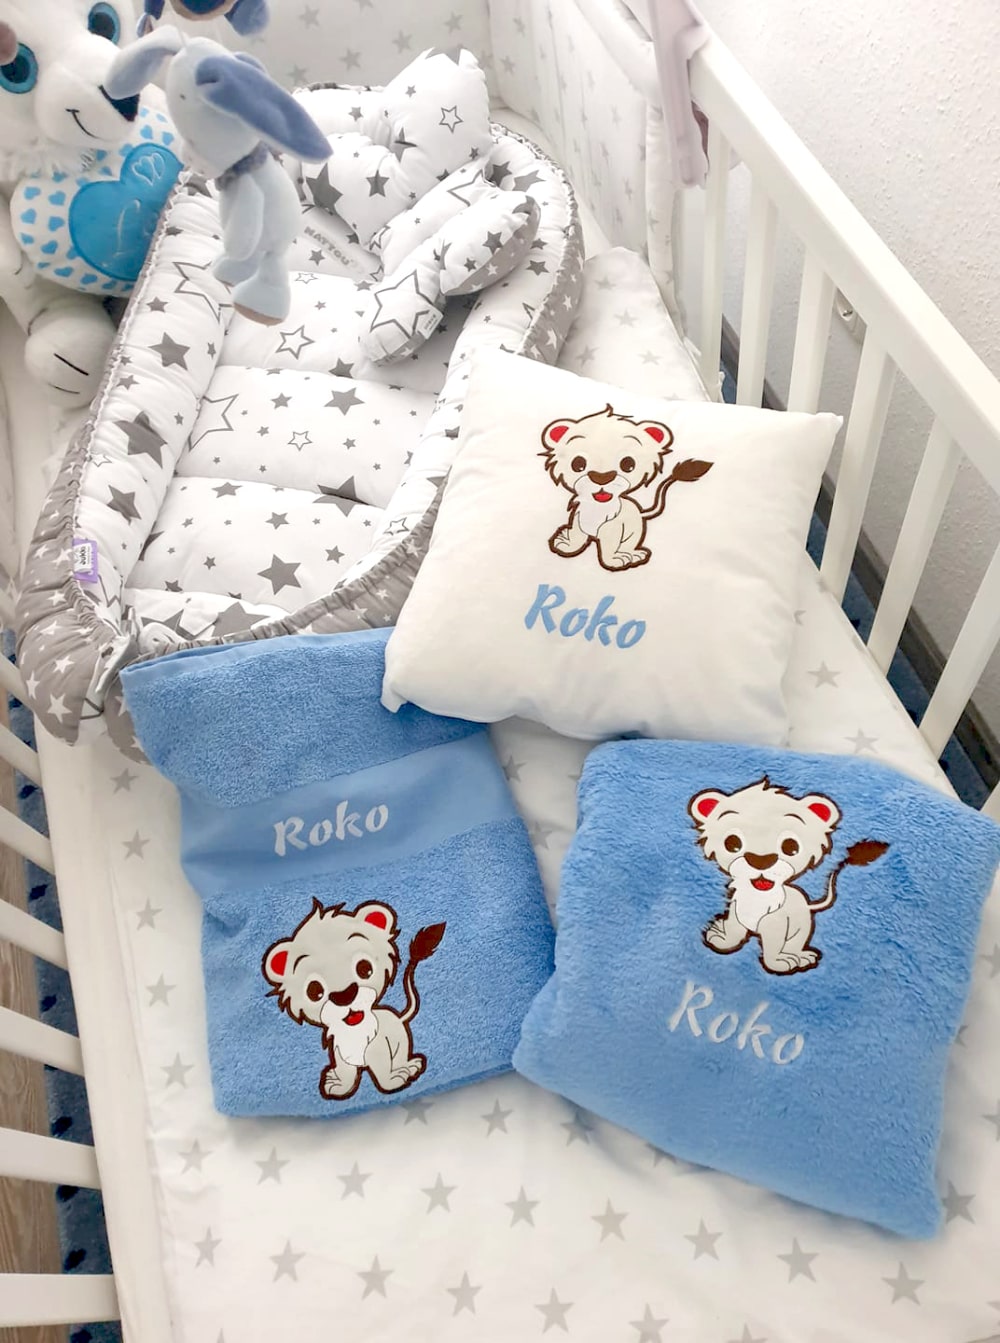 Ein personalisiertes Set für Kinder - ein Kissen, eine Decke und ein Handtuch mit dem Namen des Babys